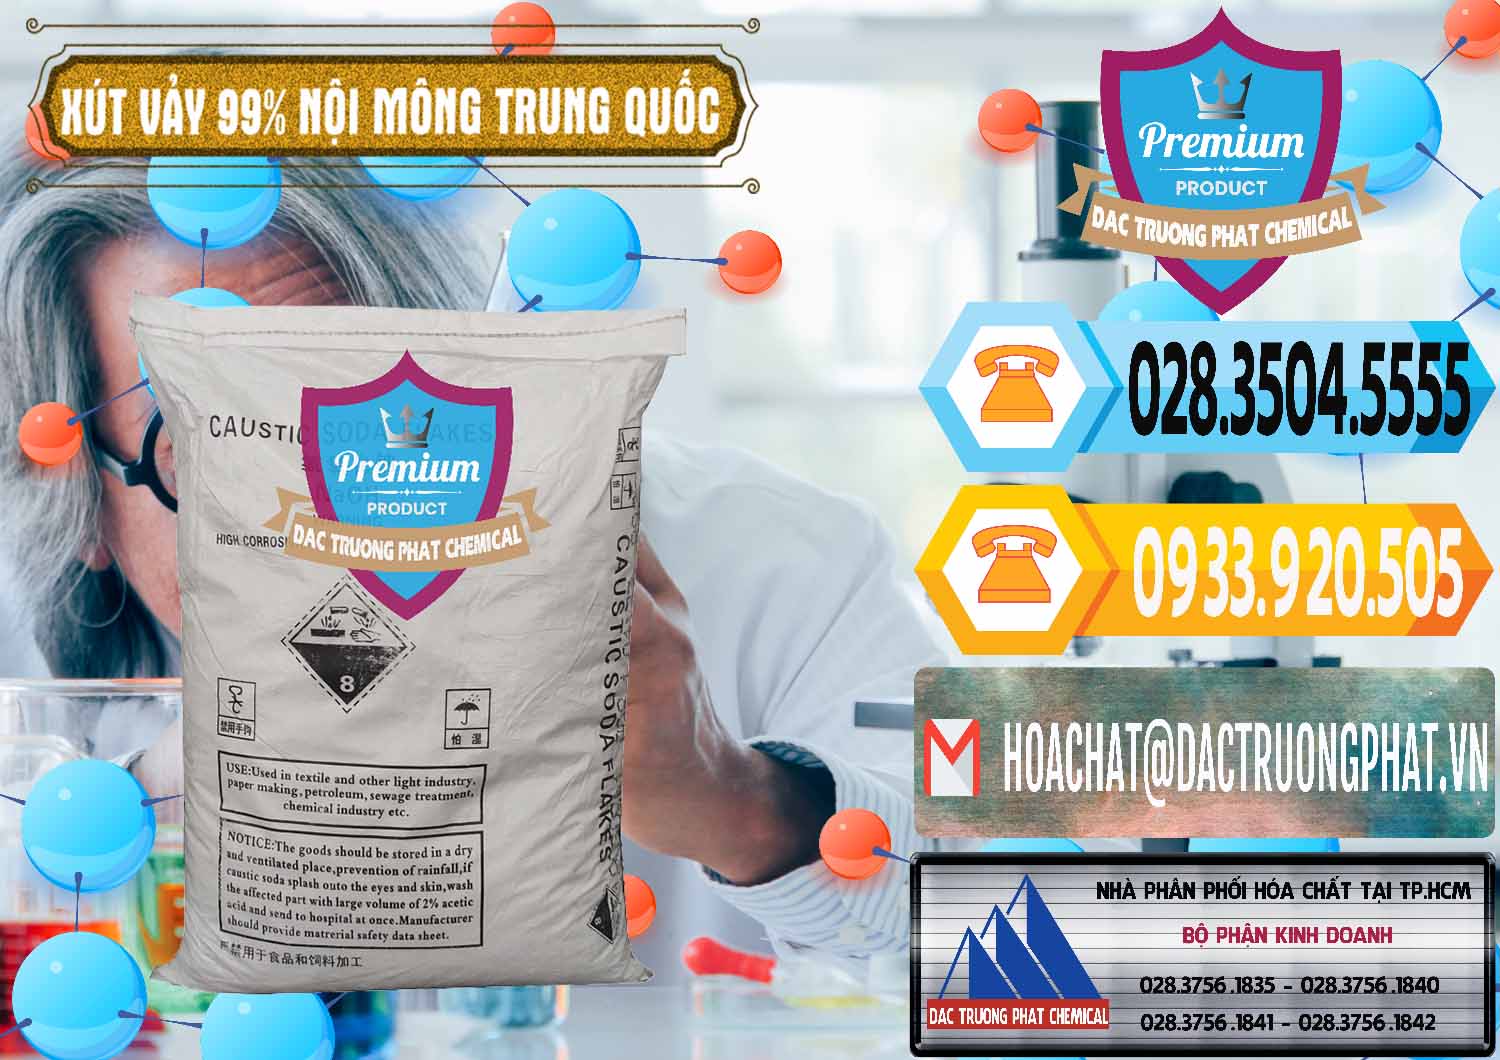 Đơn vị chuyên cung cấp và bán Xút Vảy - NaOH Vảy 99% Nội Mông Trung Quốc China - 0228 - Phân phối _ cung cấp hóa chất tại TP.HCM - hoachattayrua.net